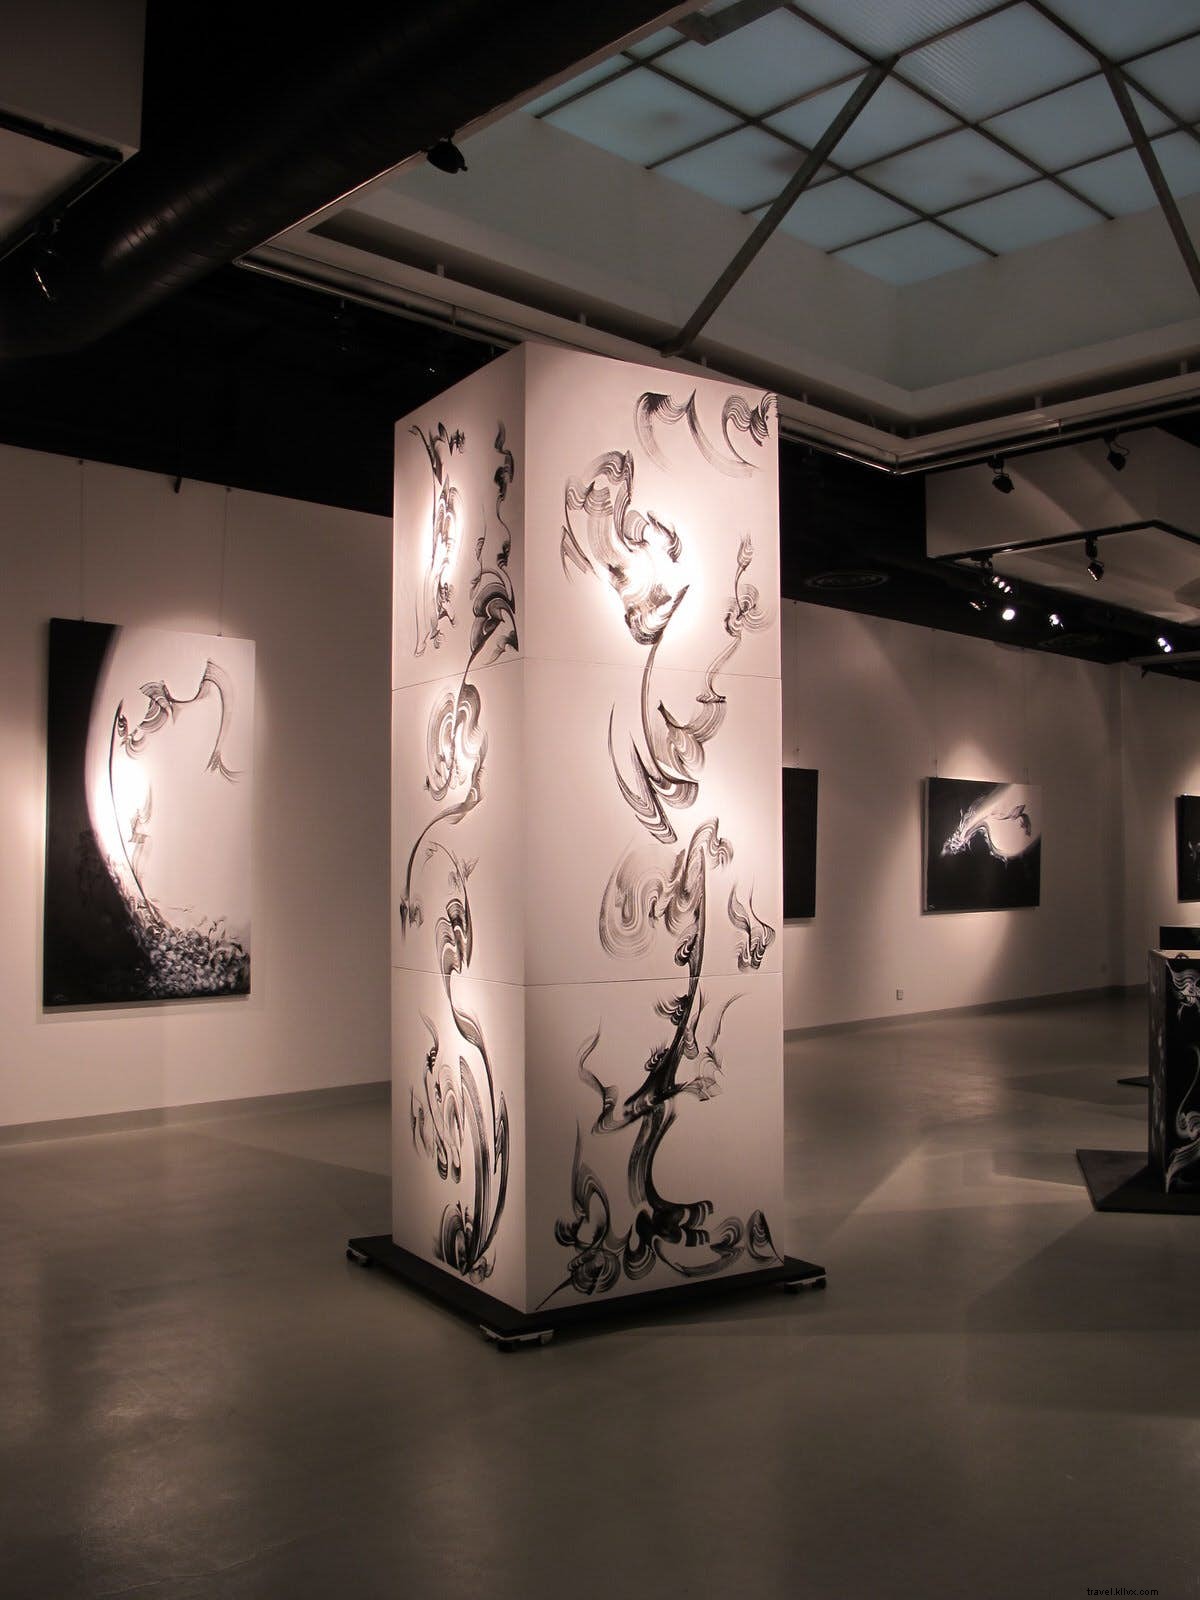 Trabalho em andamento:galerias essenciais da florescente cena artística de Riade 